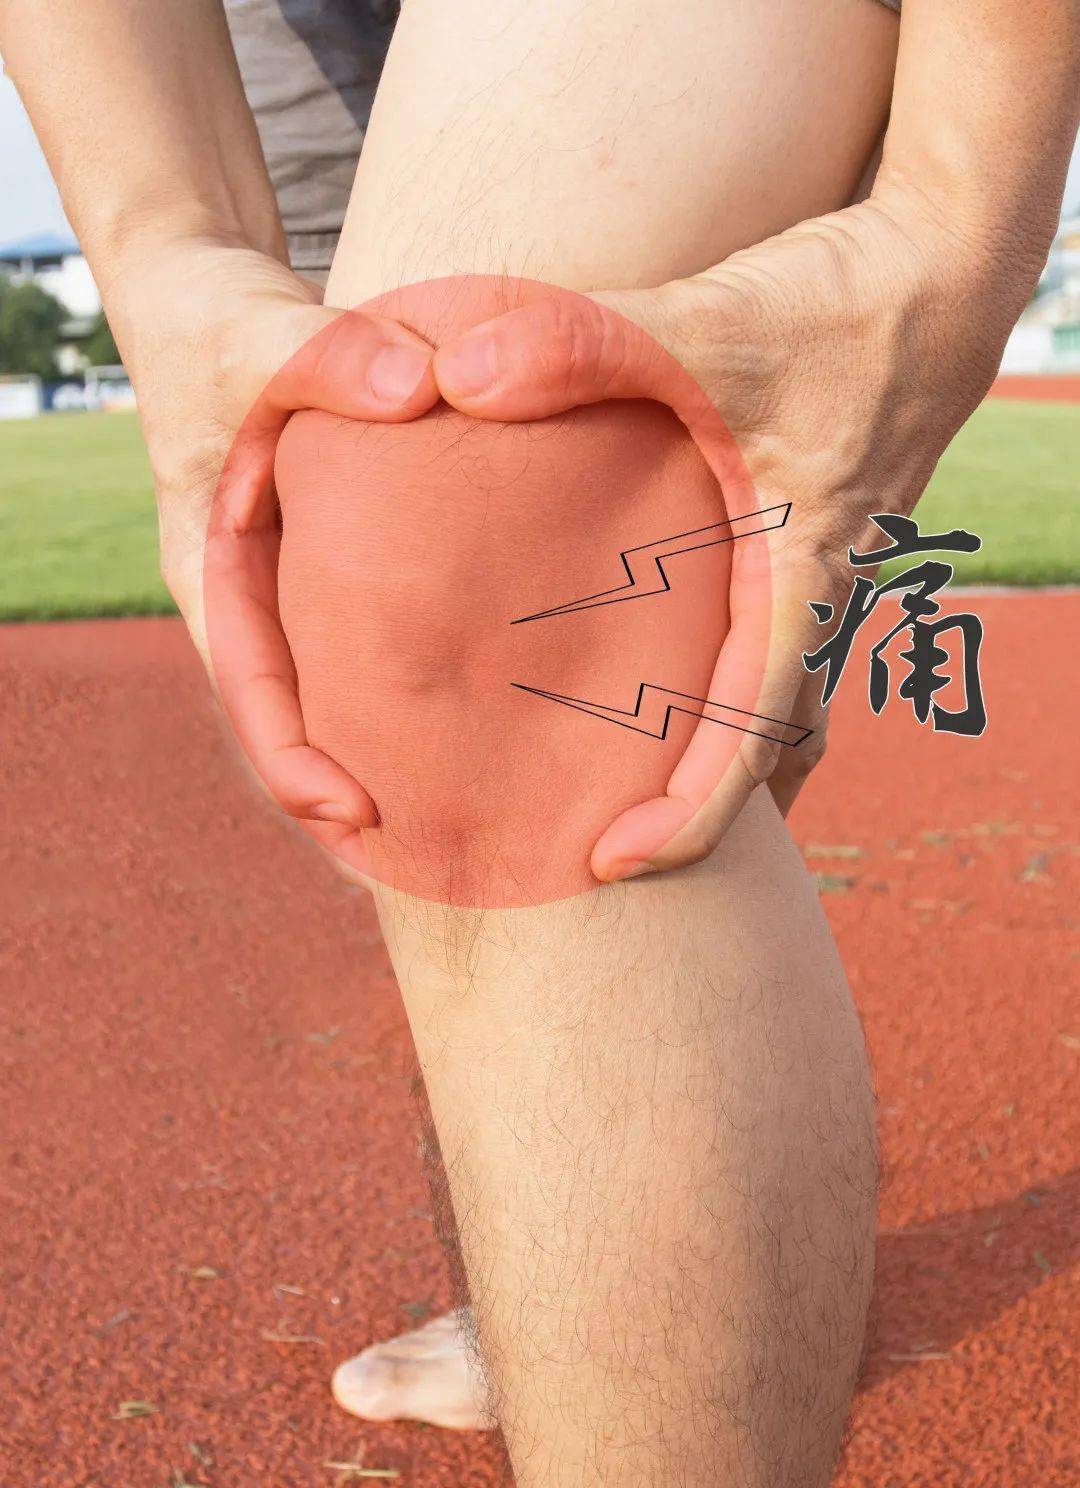 膝关节出现问题的六大常见症状包括疼痛,肿胀,畸形,弹响,晨僵,无力